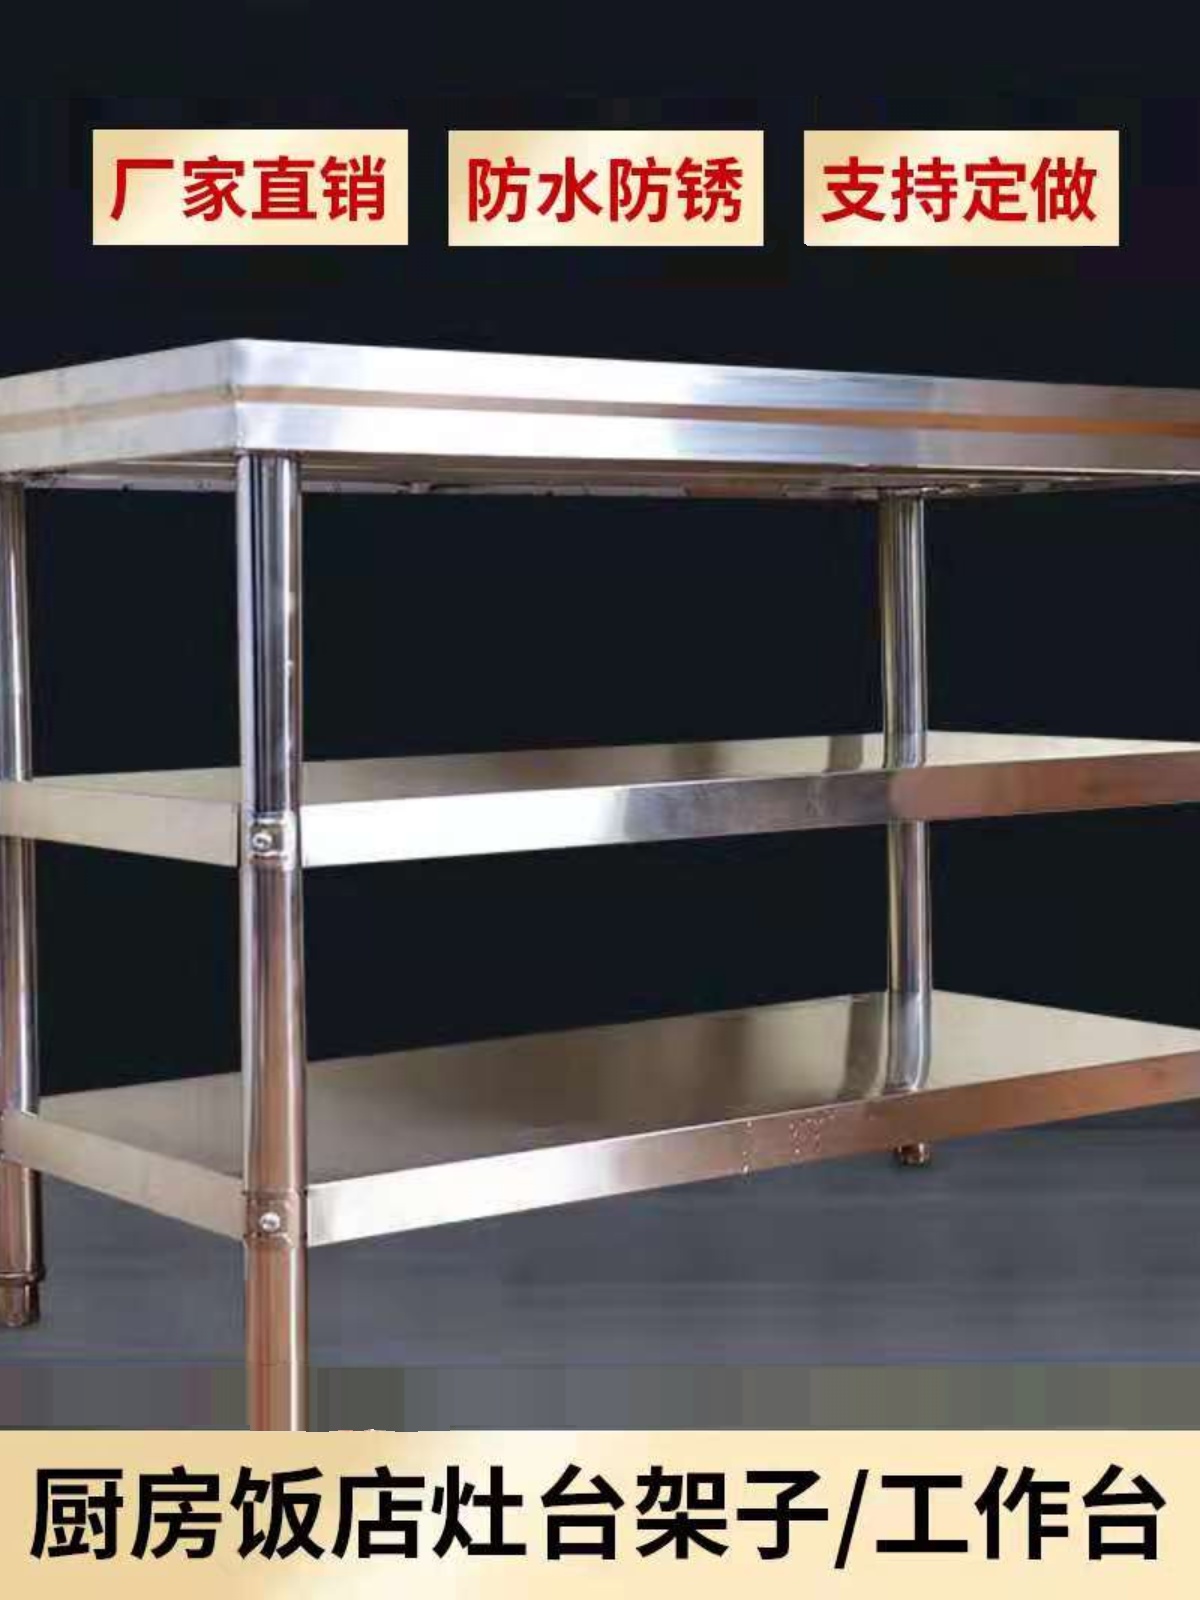 加厚不锈钢工作台操作台砍骨剁肉切菜大桌子案板灶台架子厨房打荷